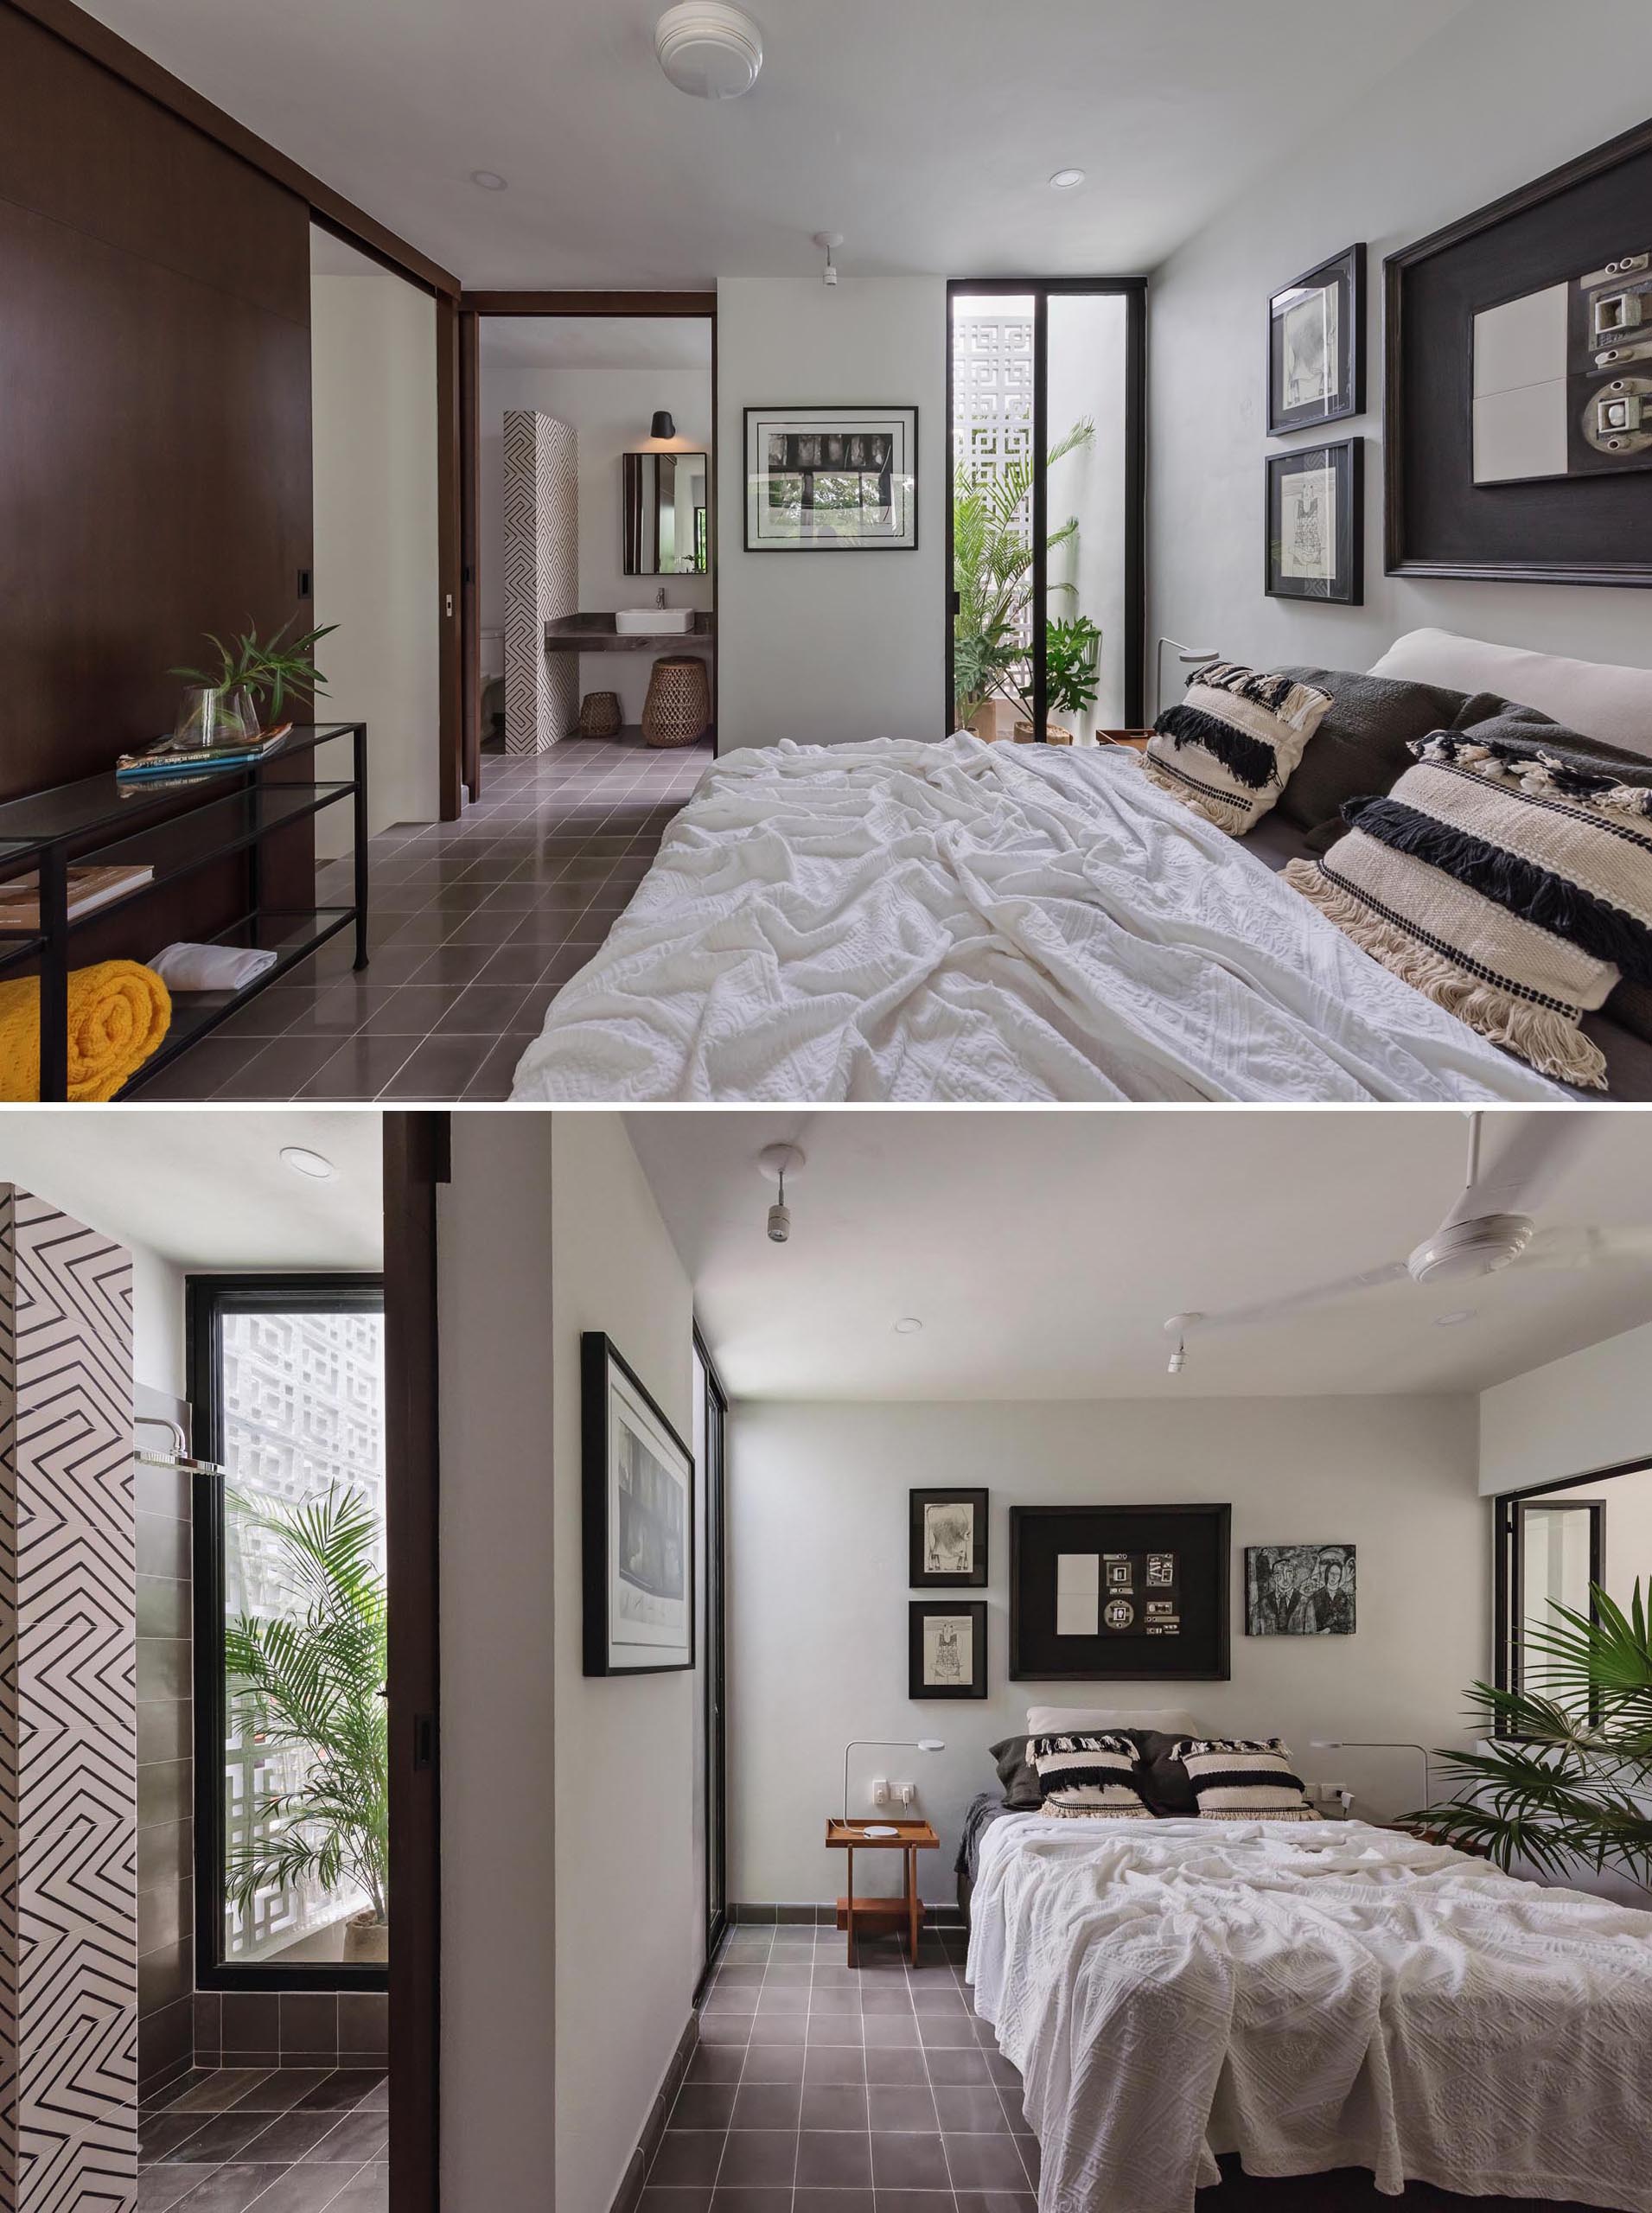 Ứng dụng các họa tiết và vật trang trí mang đậm phong cách nhiệt đới trong thiết kế nội thất phòng ngủ  | Nguồn: Internet.